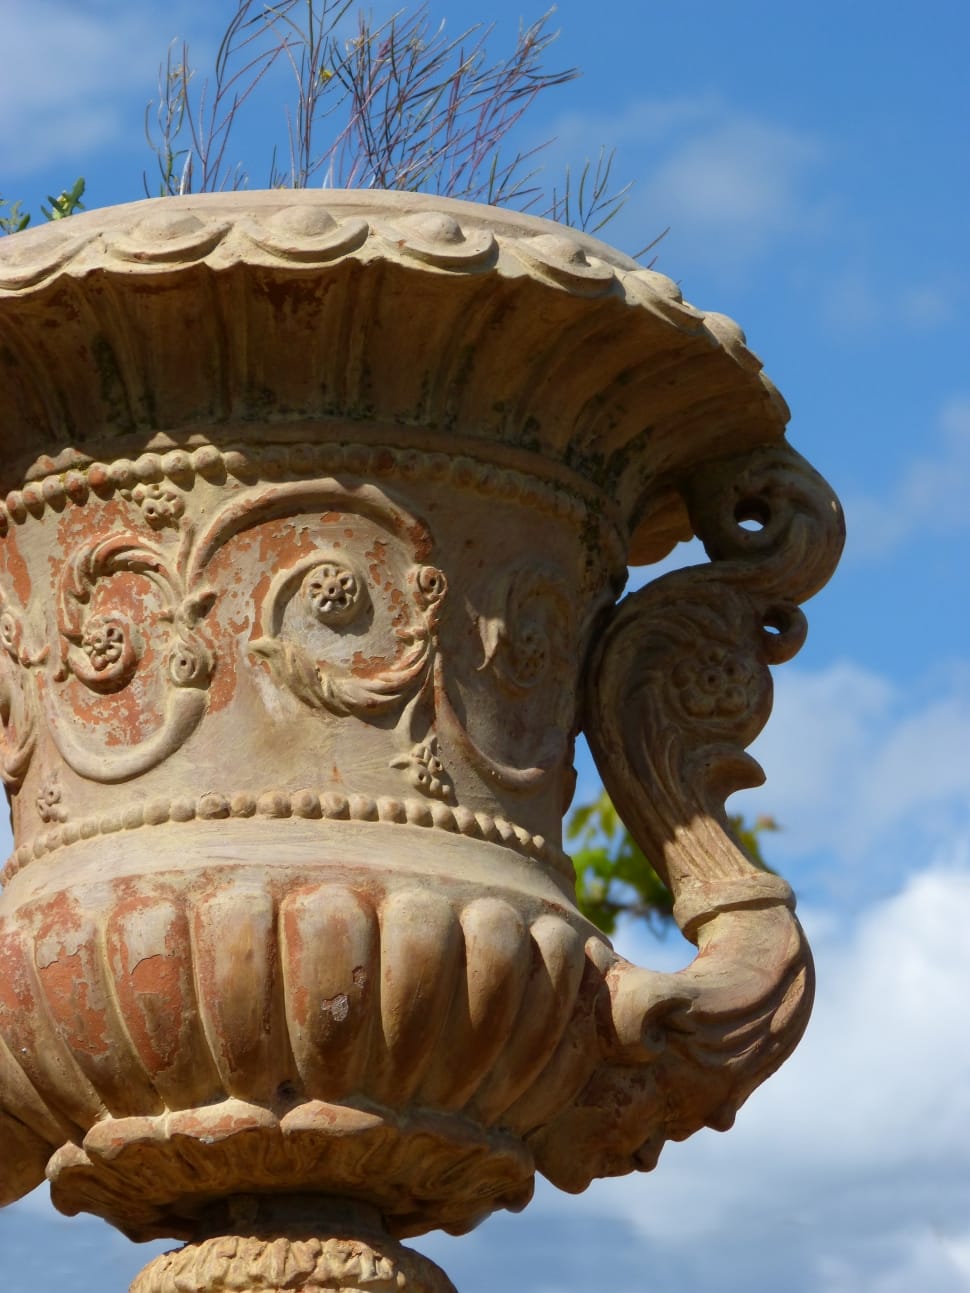 brown ceramic vase preview